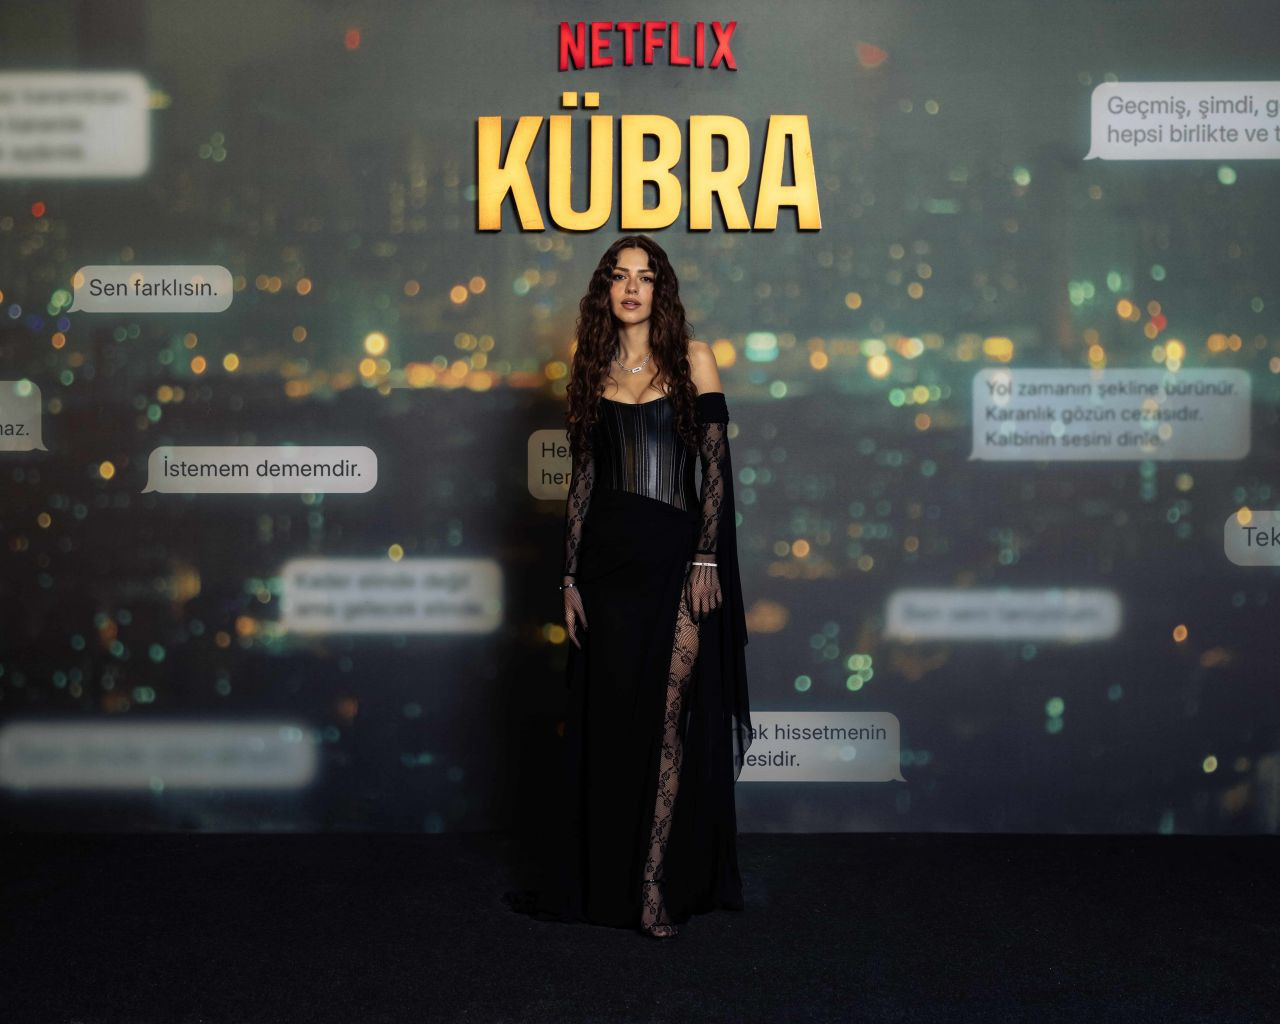 Çağatay Ulusoy’un yeni Netflix dizisi Kübra’nın galası gerçekleşti - Sayfa 3